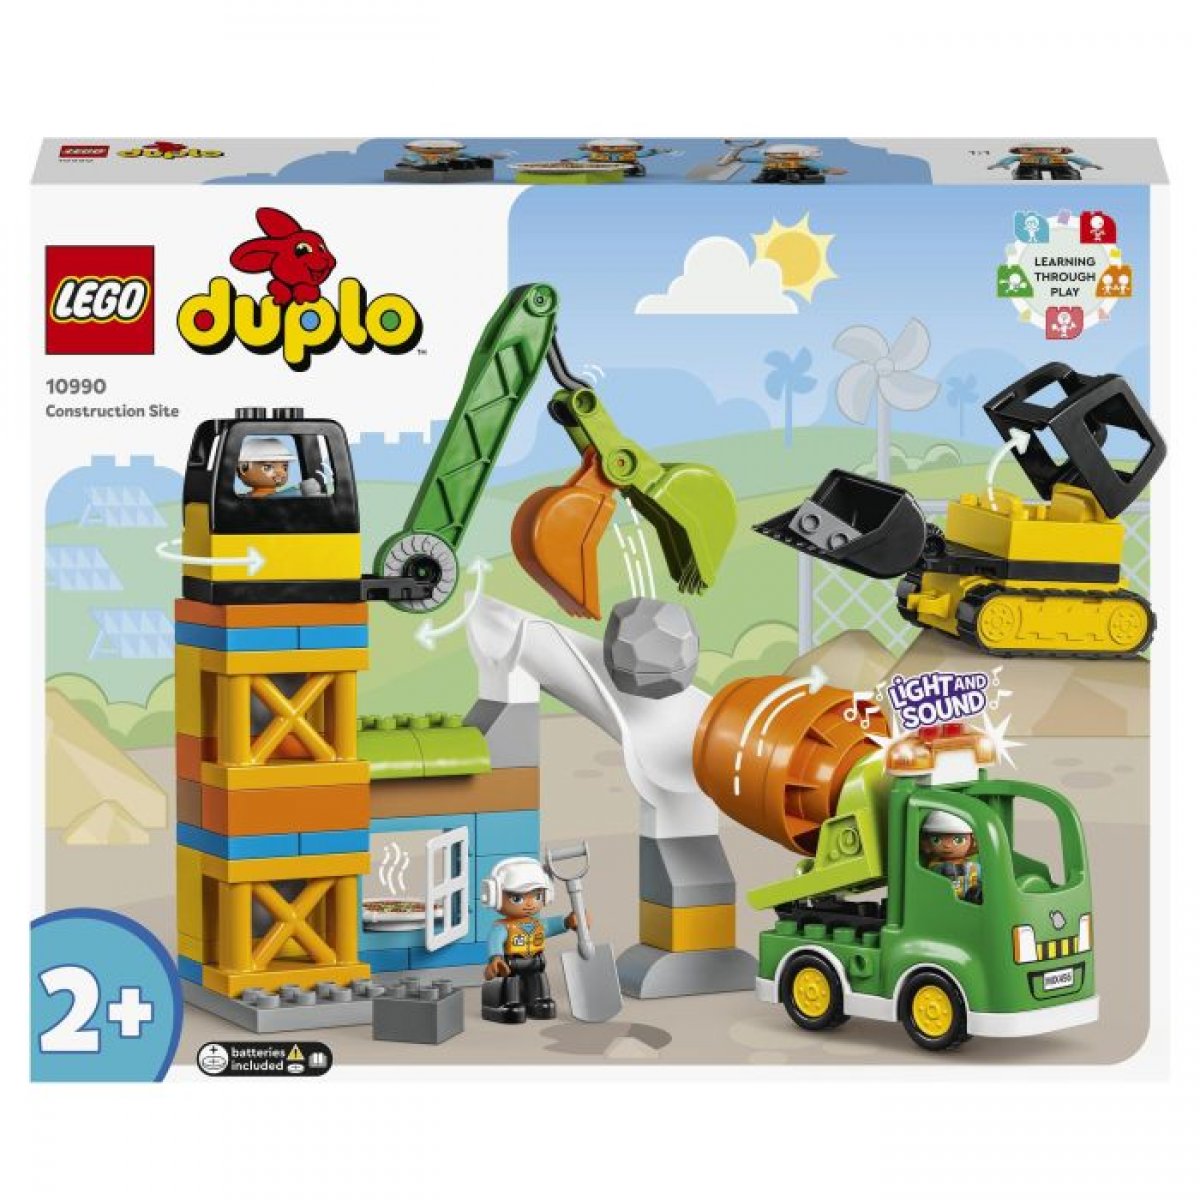 LEGO 10990 - DUPLO Baustelle mit Baufahrzeugen